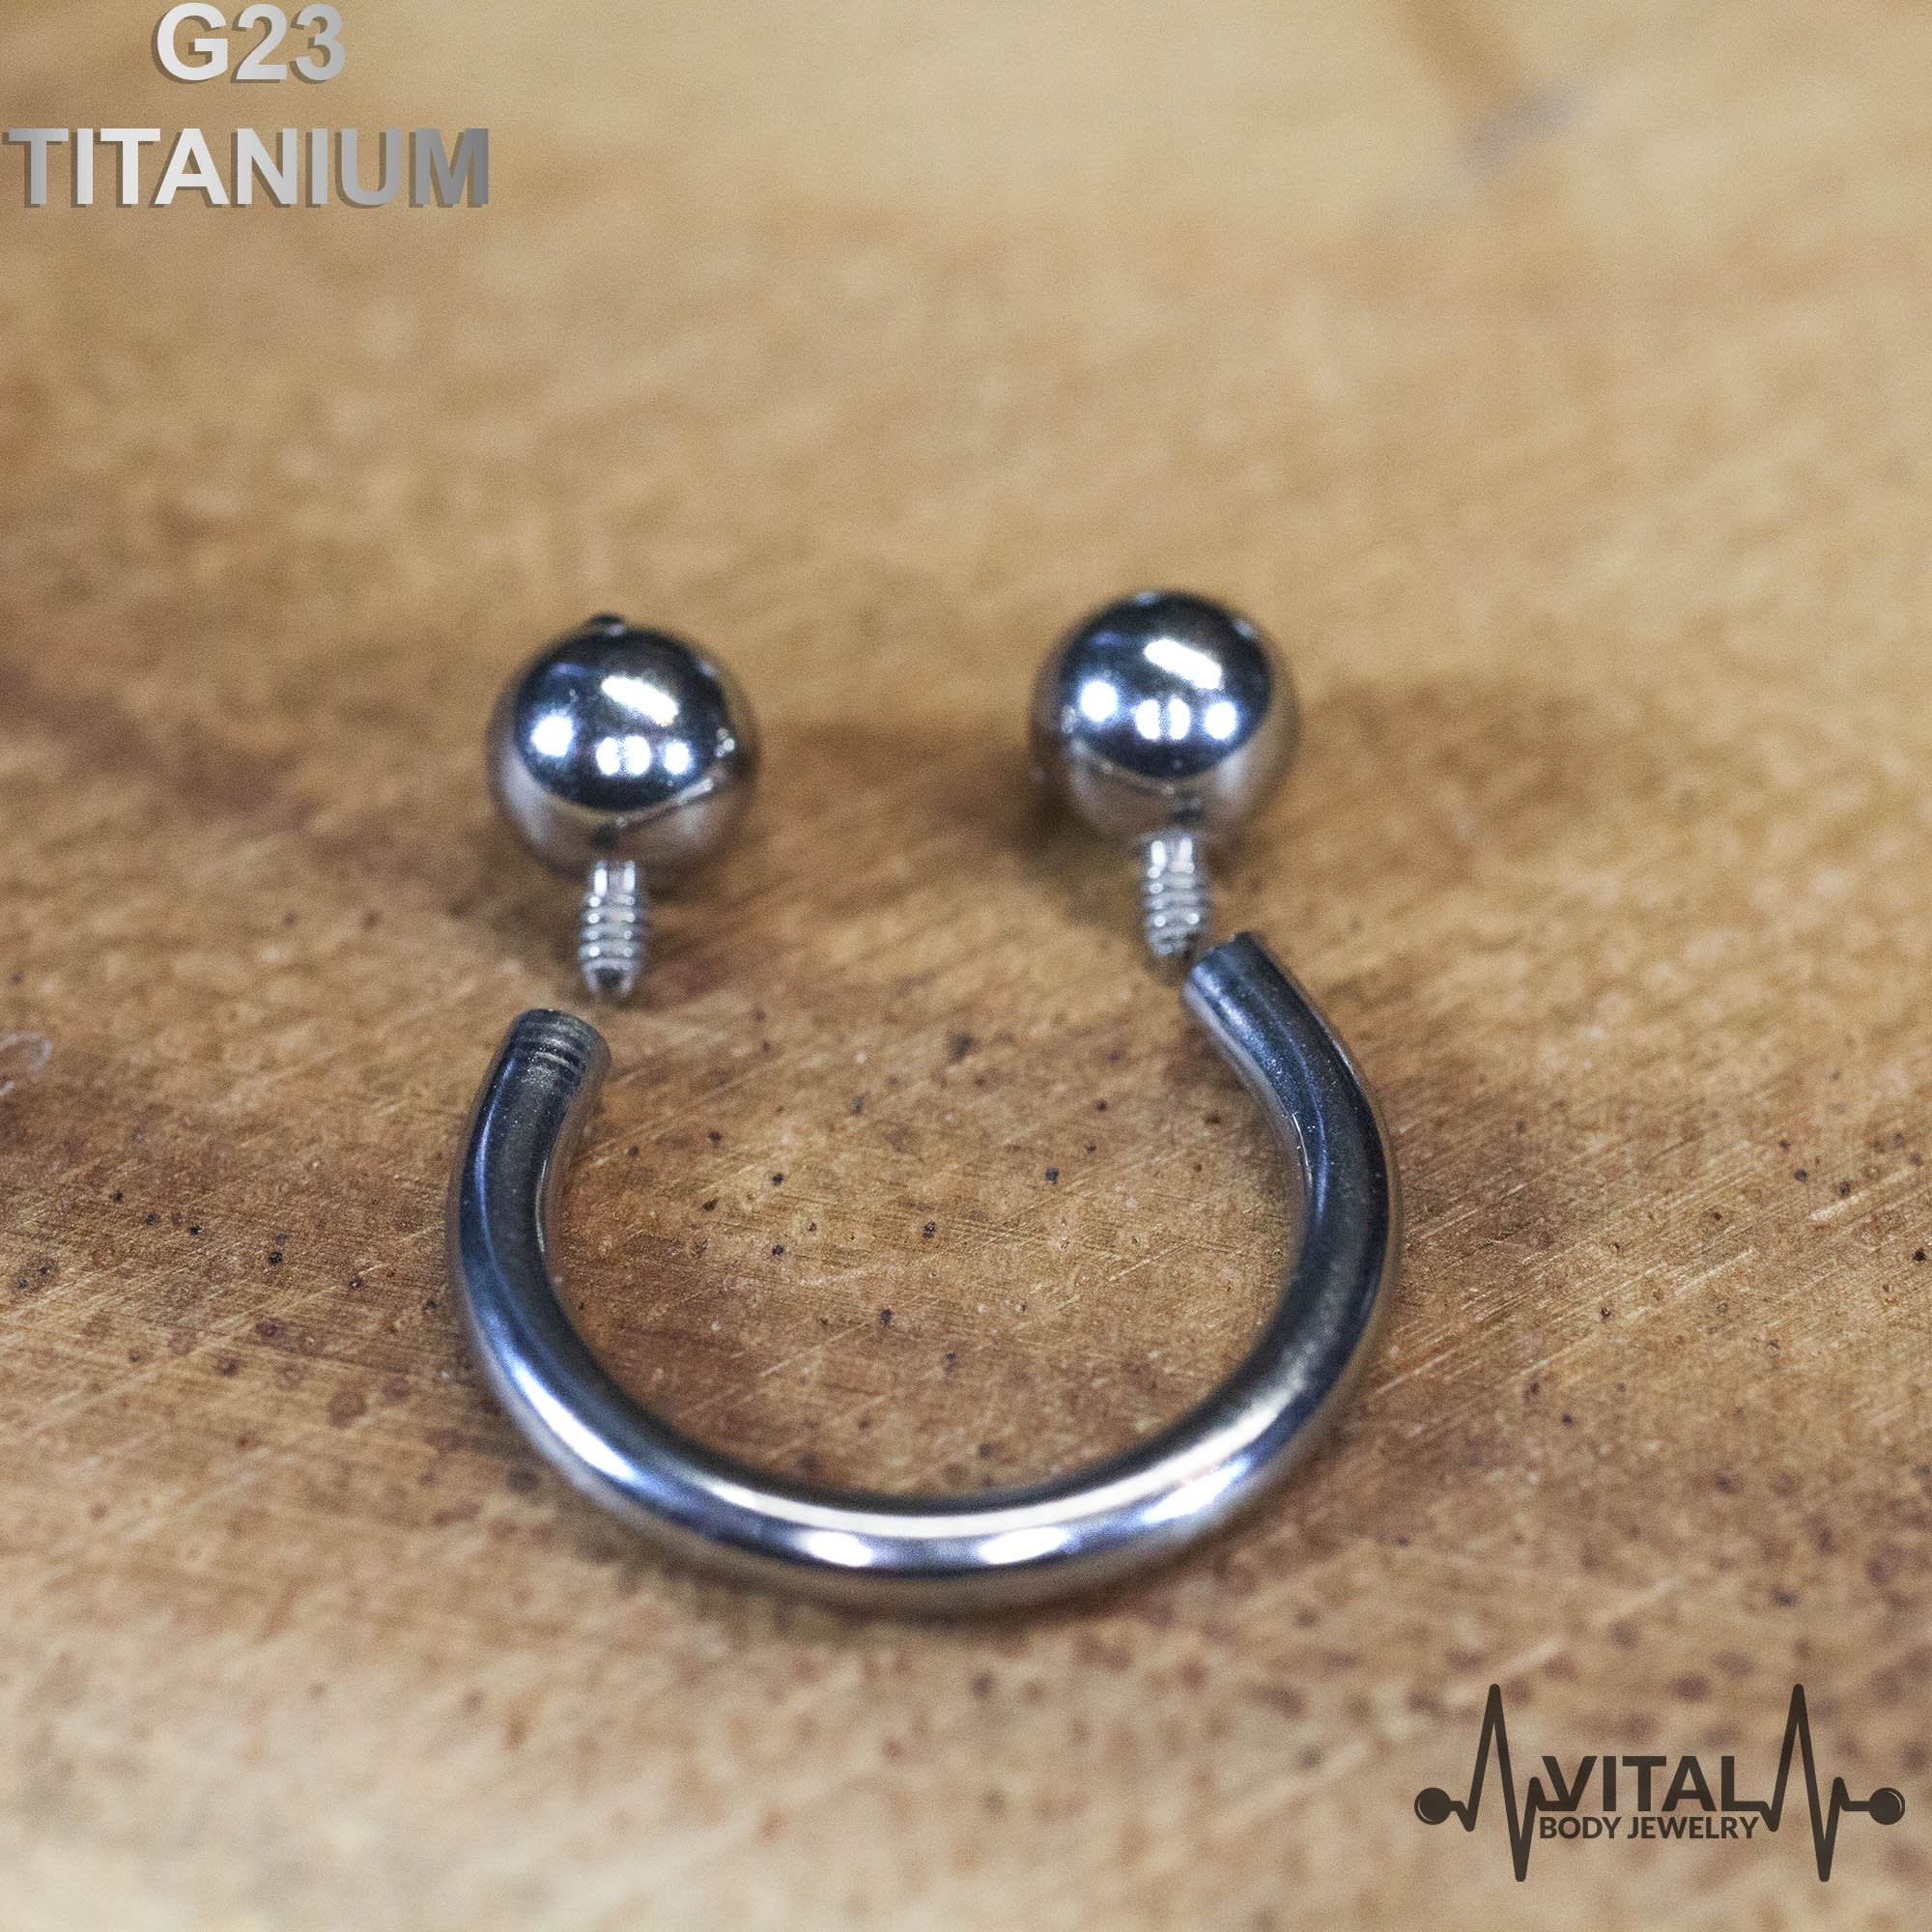 Titanium Nose Piercing Jewelry | Titanium Nose Ring | Titanium Earrings |  Daith Piercing - Piercing Jewelry - Aliexpress